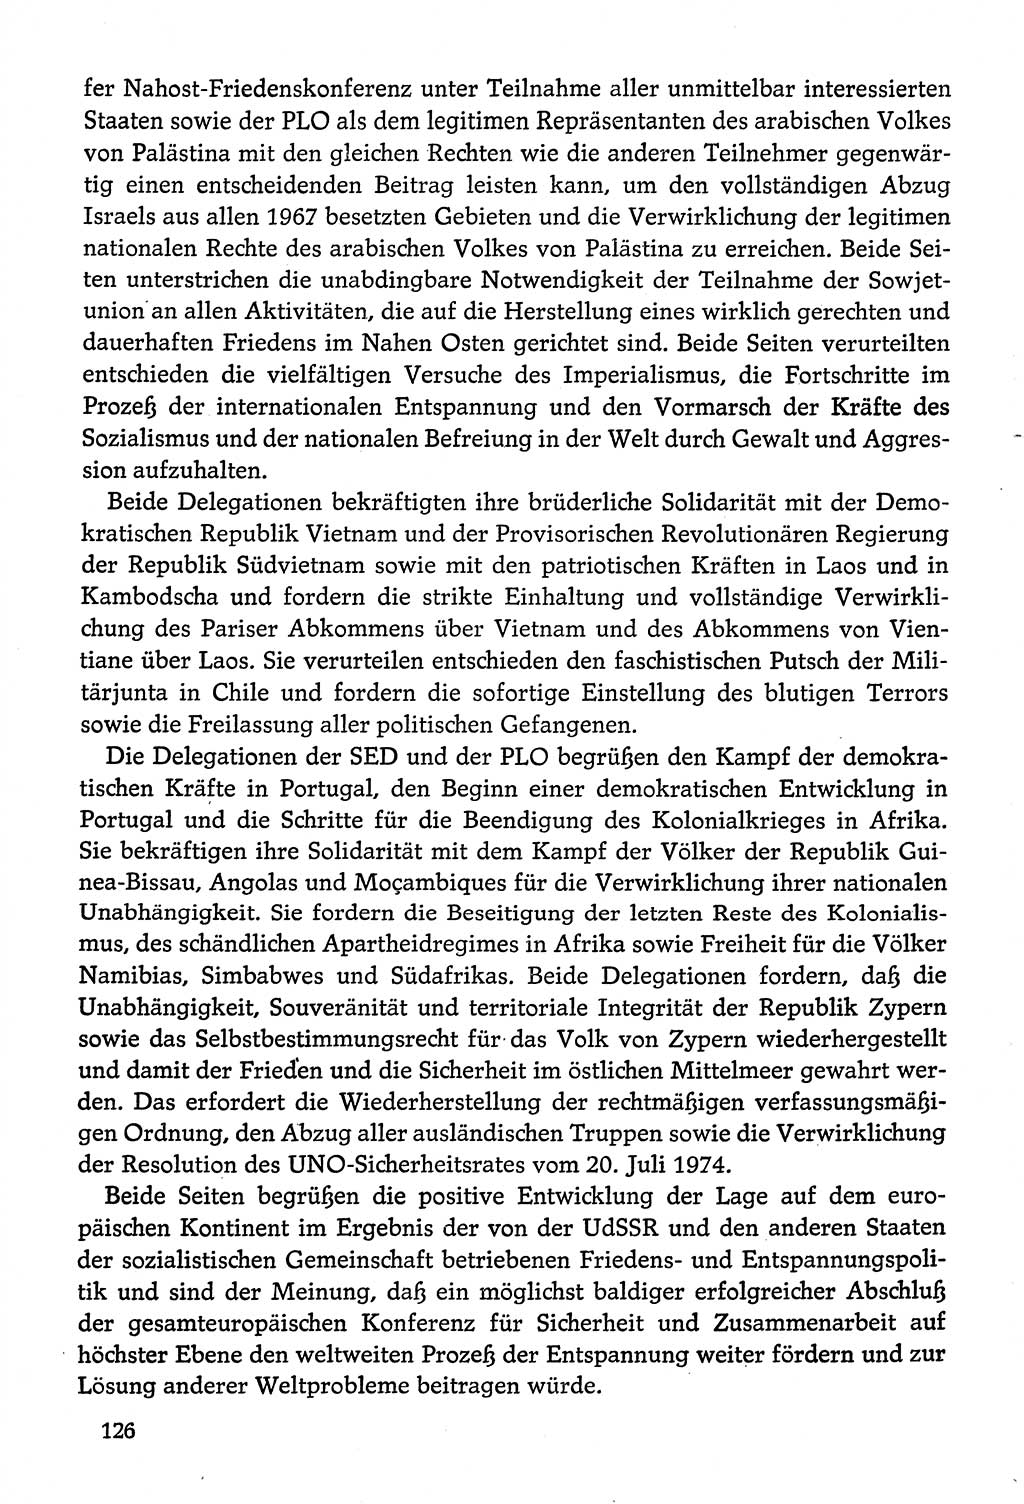 Dokumente der Sozialistischen Einheitspartei Deutschlands (SED) [Deutsche Demokratische Republik (DDR)] 1974-1975, Seite 126 (Dok. SED DDR 1978, Bd. ⅩⅤ, S. 126)